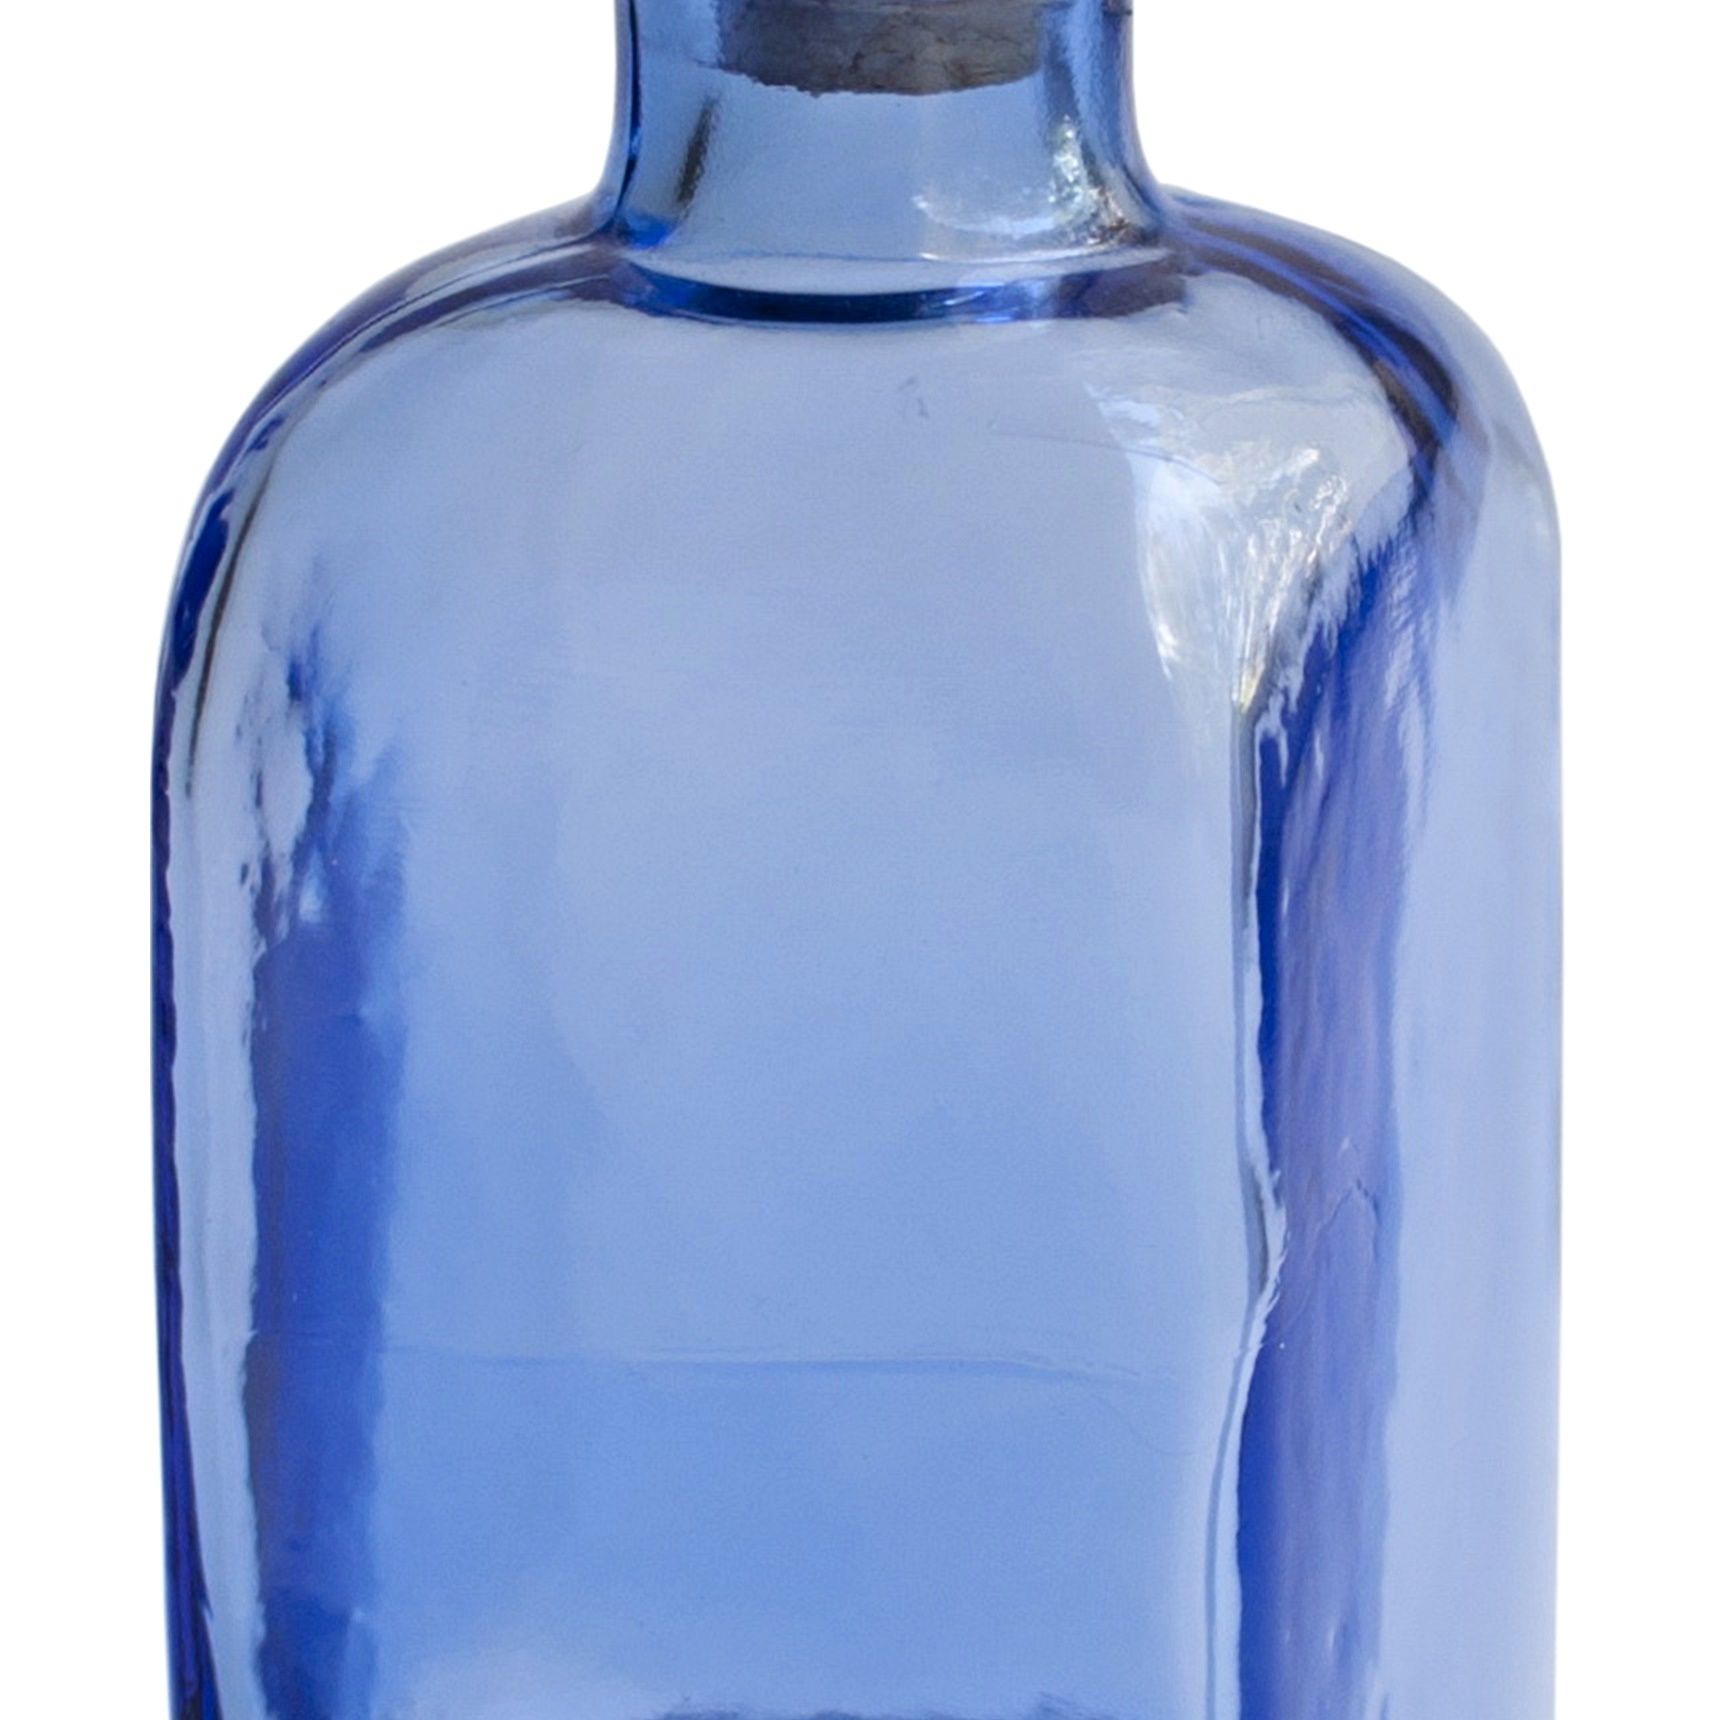 Купить стеклянную бутылочку. Квадратная стеклянная бутылка. Бутылка из синего стекла. Голубая стеклянная бутылка. Синяя бутыль.